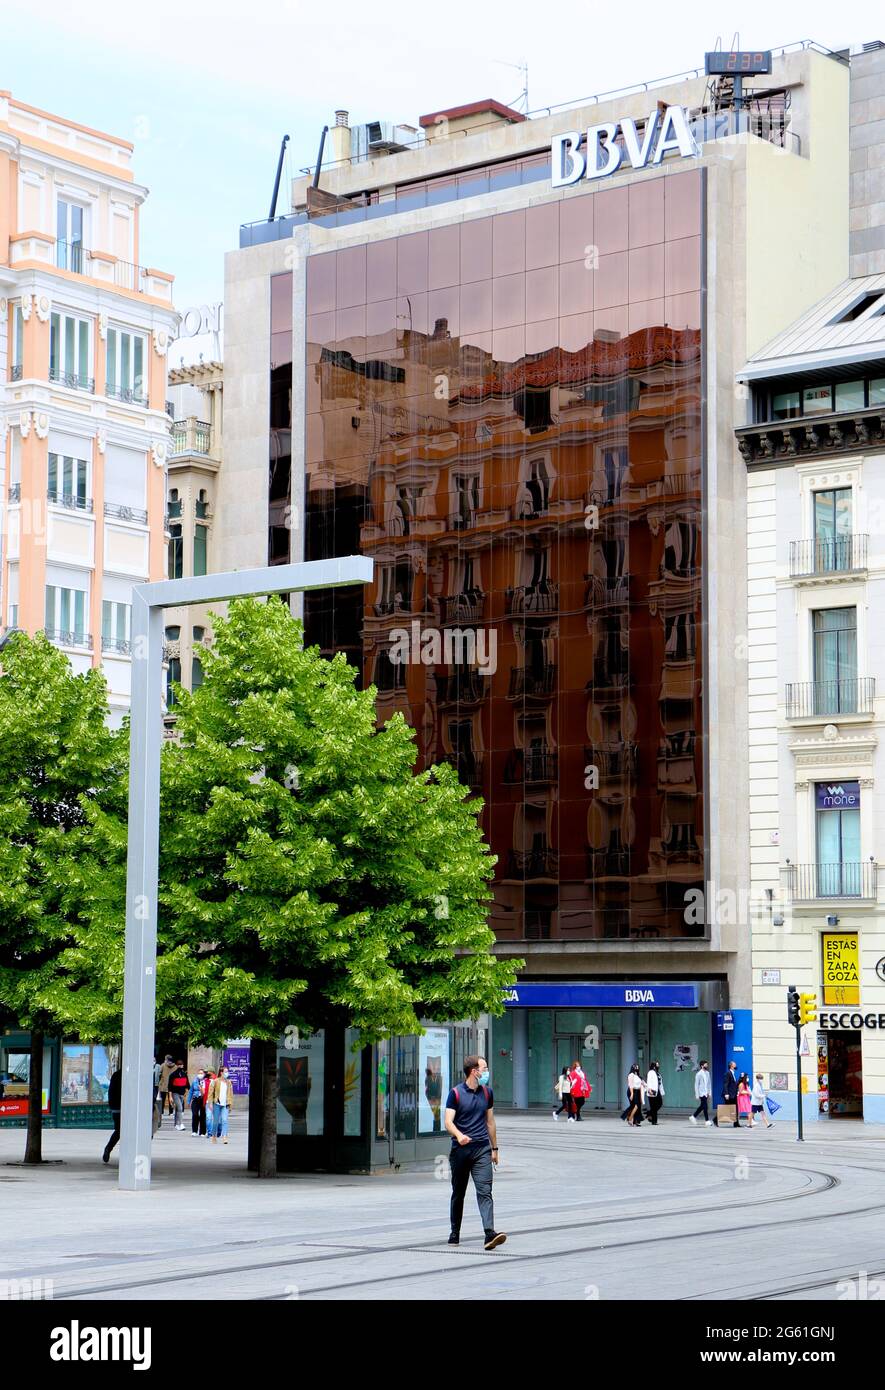 Banco Bilbao Vizcaya Argentaria Edificio de oficinas con fachada de vidrio BBVA en el centro de Zaragoza Arargon España Foto de stock